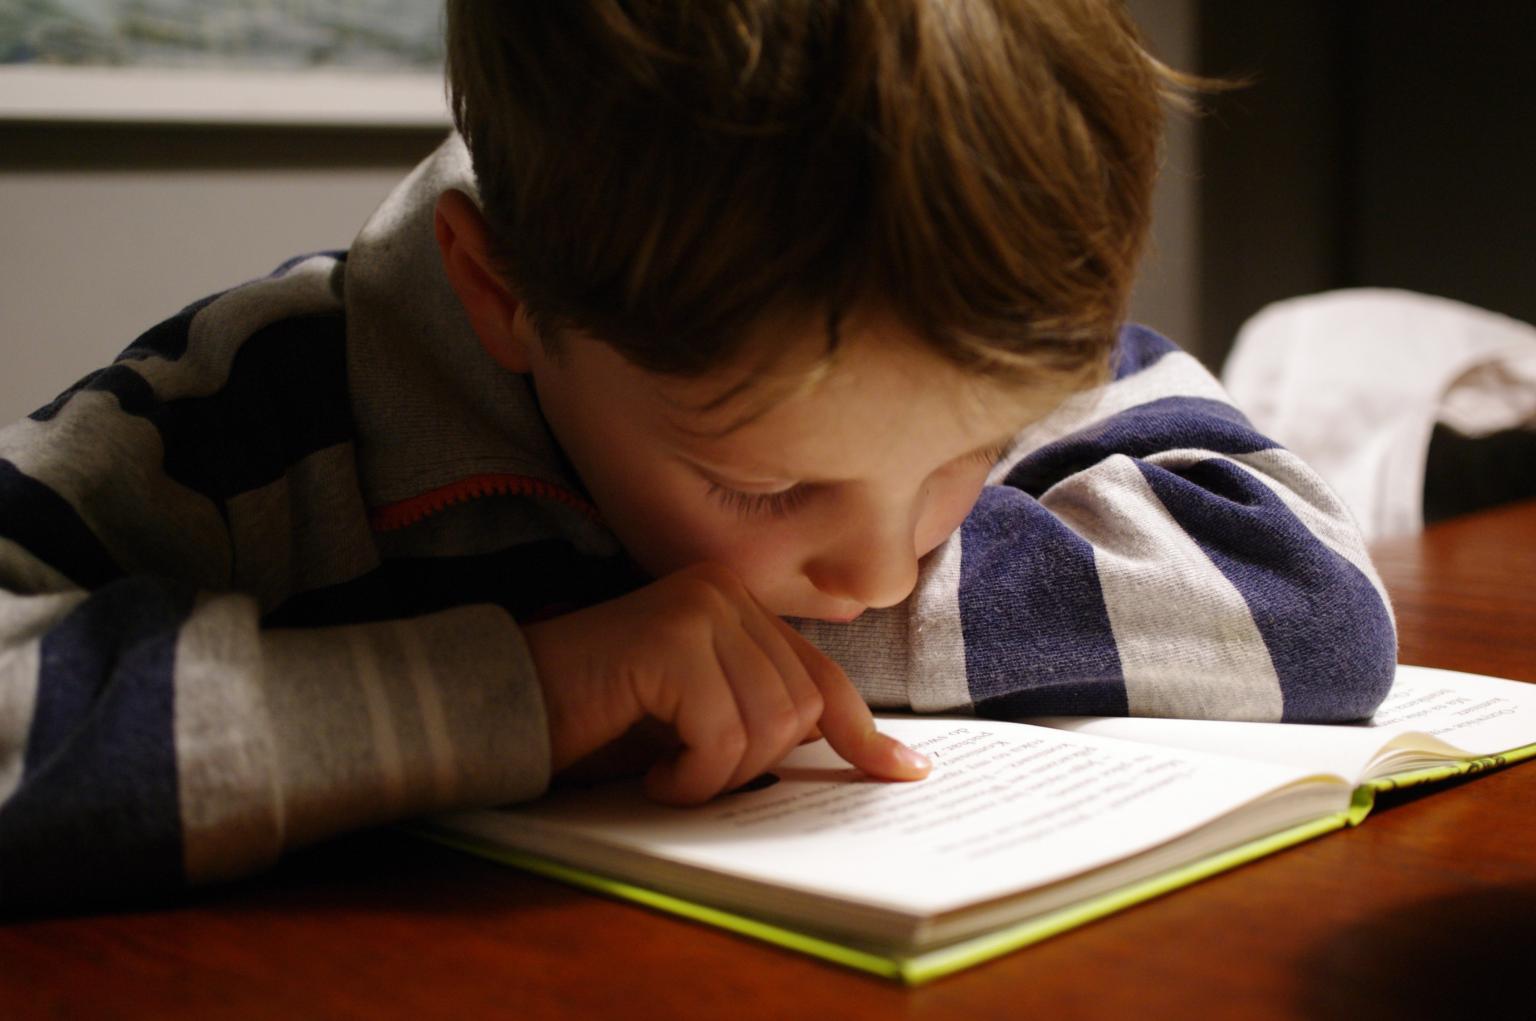 Kind beim Lesen (c) Foto von Michał Parzuchowski auf Unsplash